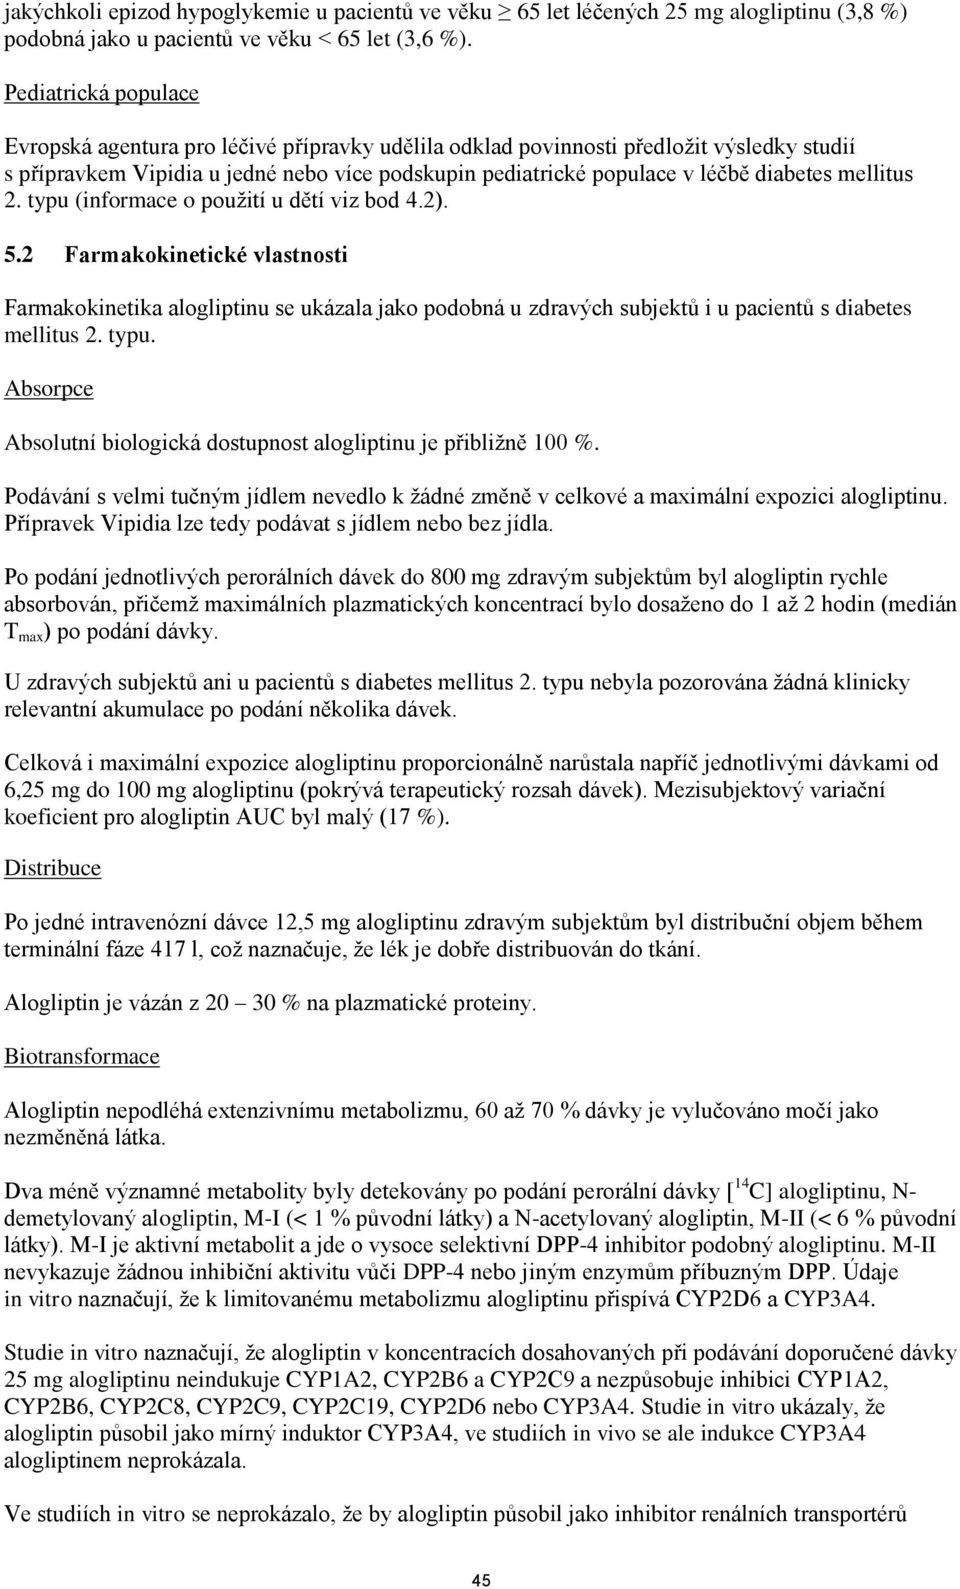 mellitus 2. typu (informace o použití u dětí viz bod 4.2). 5.2 Farmakokinetické vlastnosti Farmakokinetika alogliptinu se ukázala jako podobná u zdravých subjektů i u pacientů s diabetes mellitus 2.